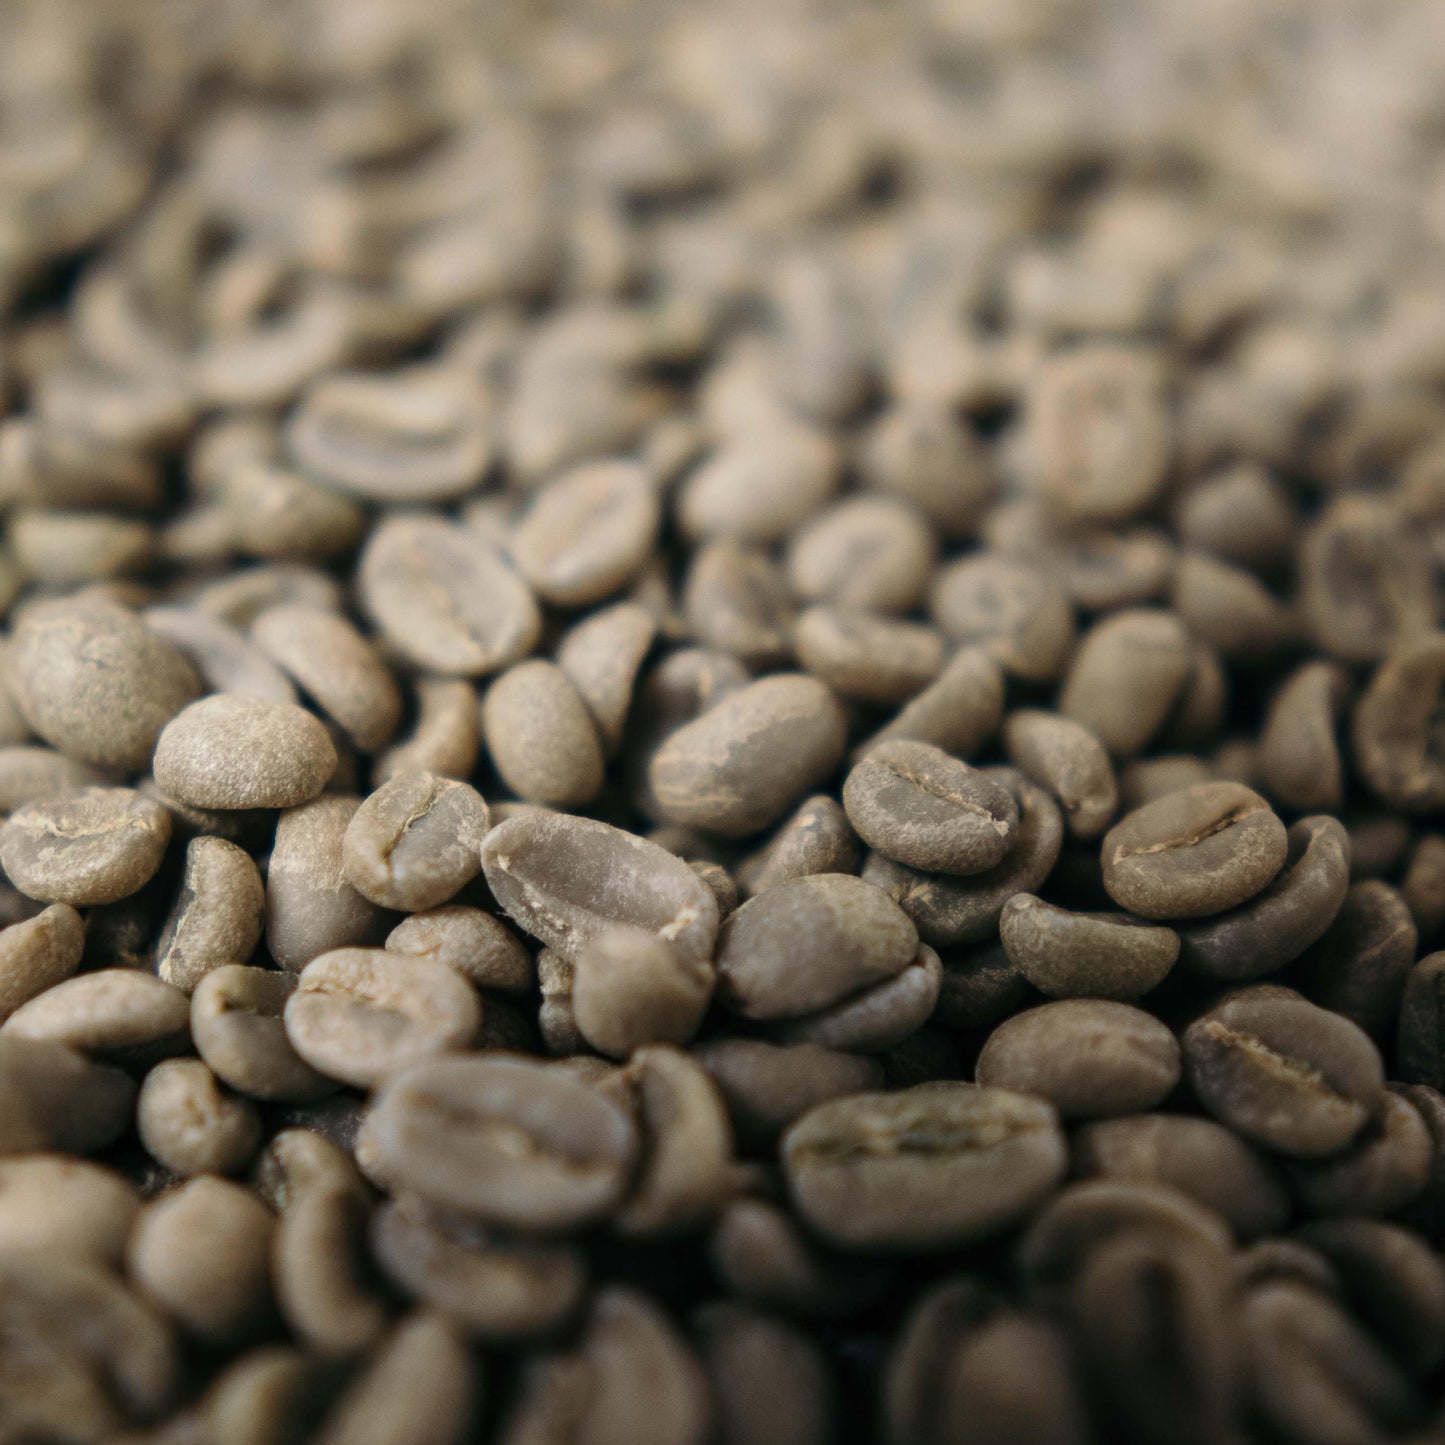 "Valderrama"- Hausmischung Nr. 4:Colombia Espresso Intense - Rohe, grüne Kaffeebohnen